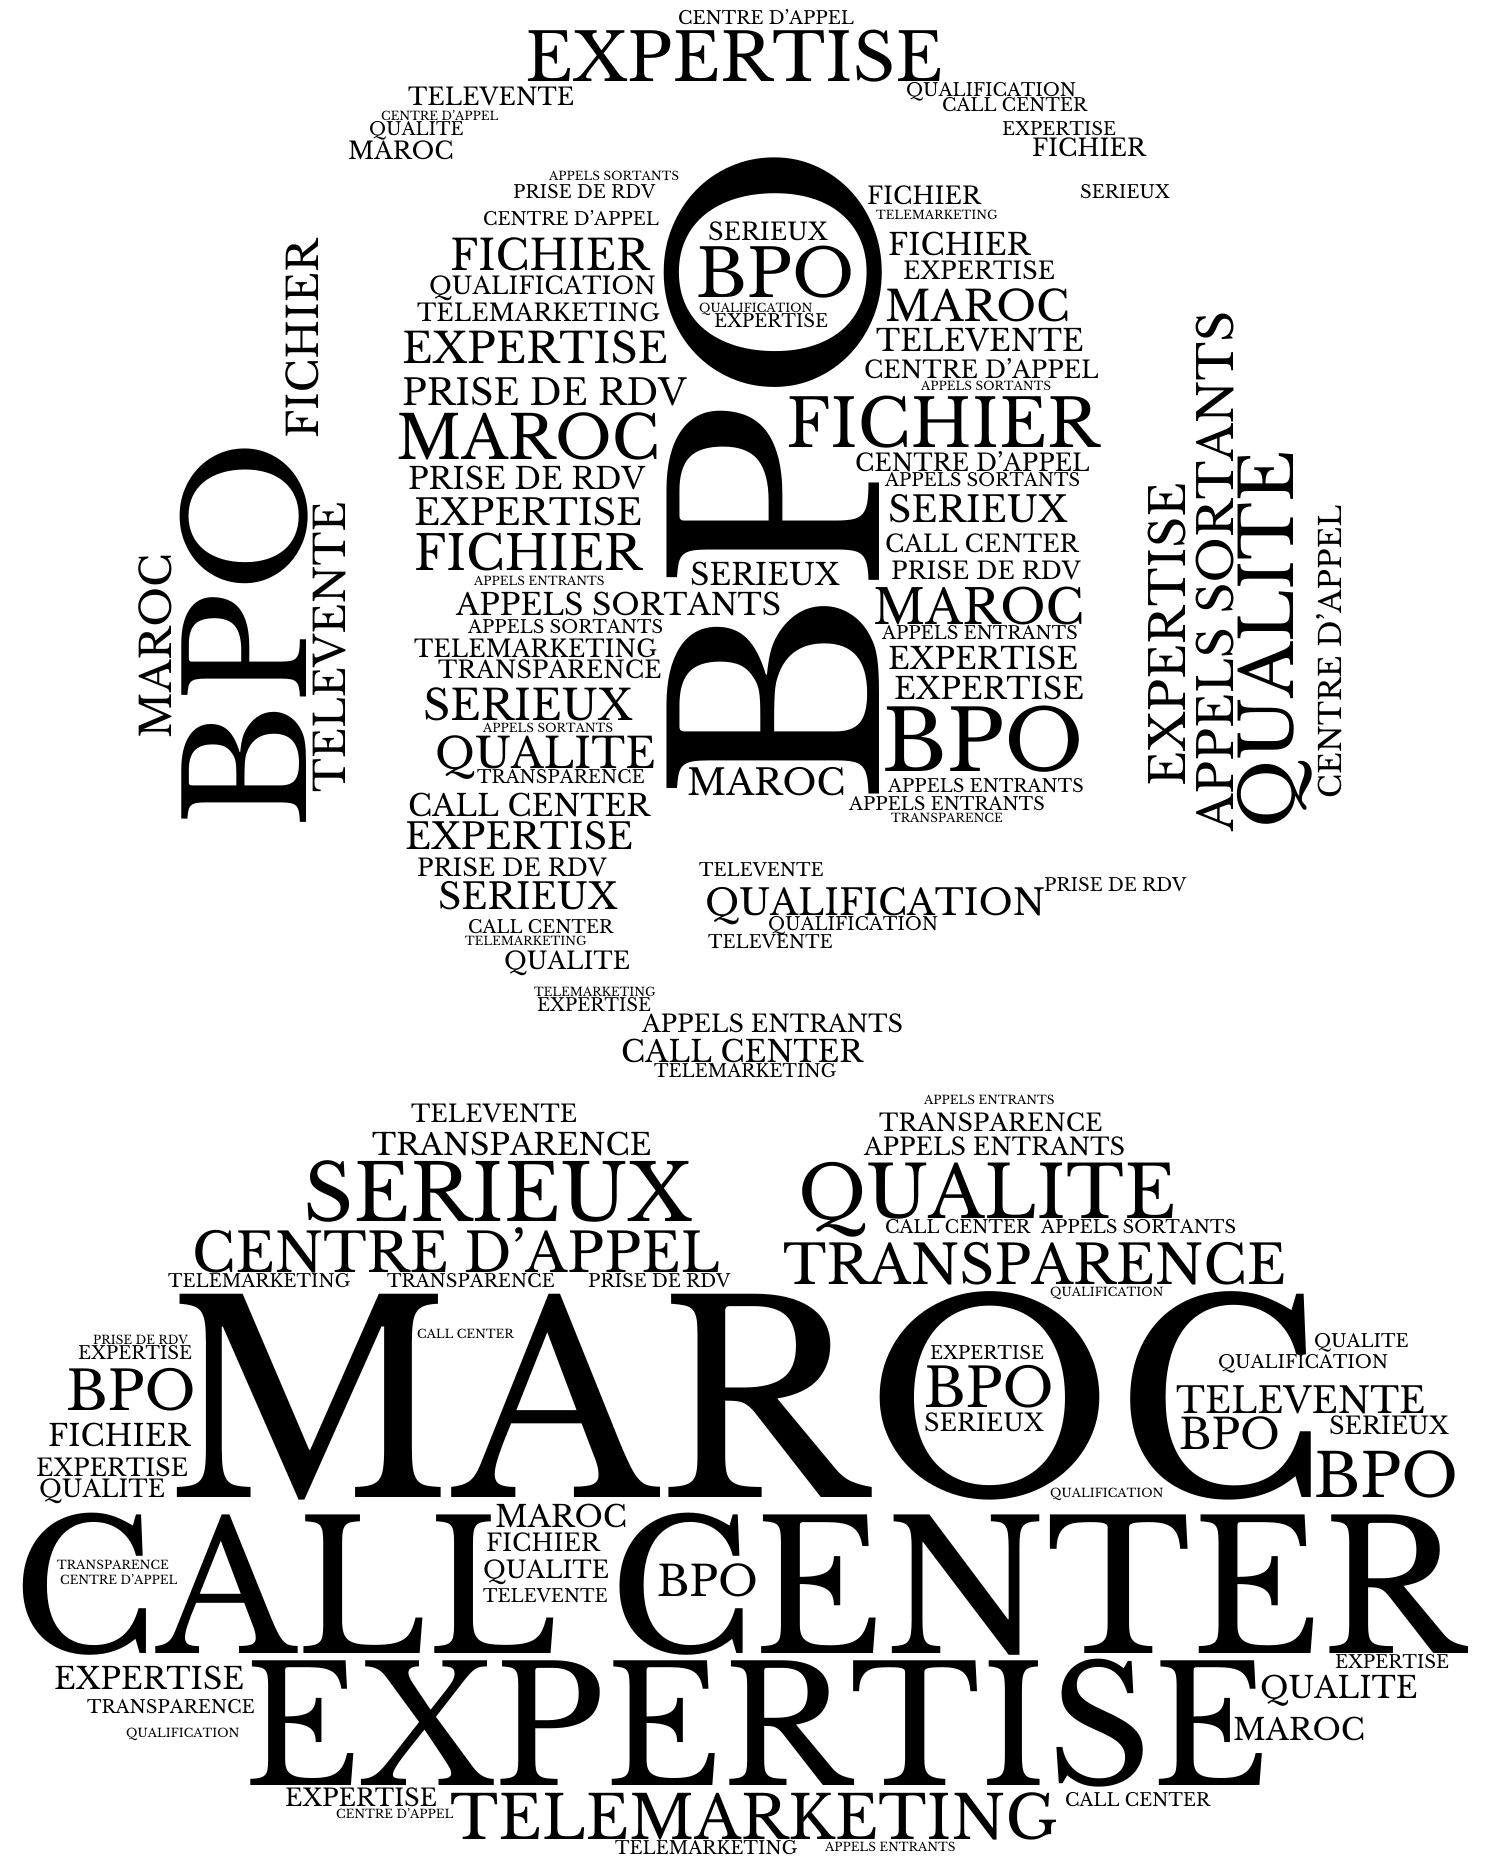 call center maroc